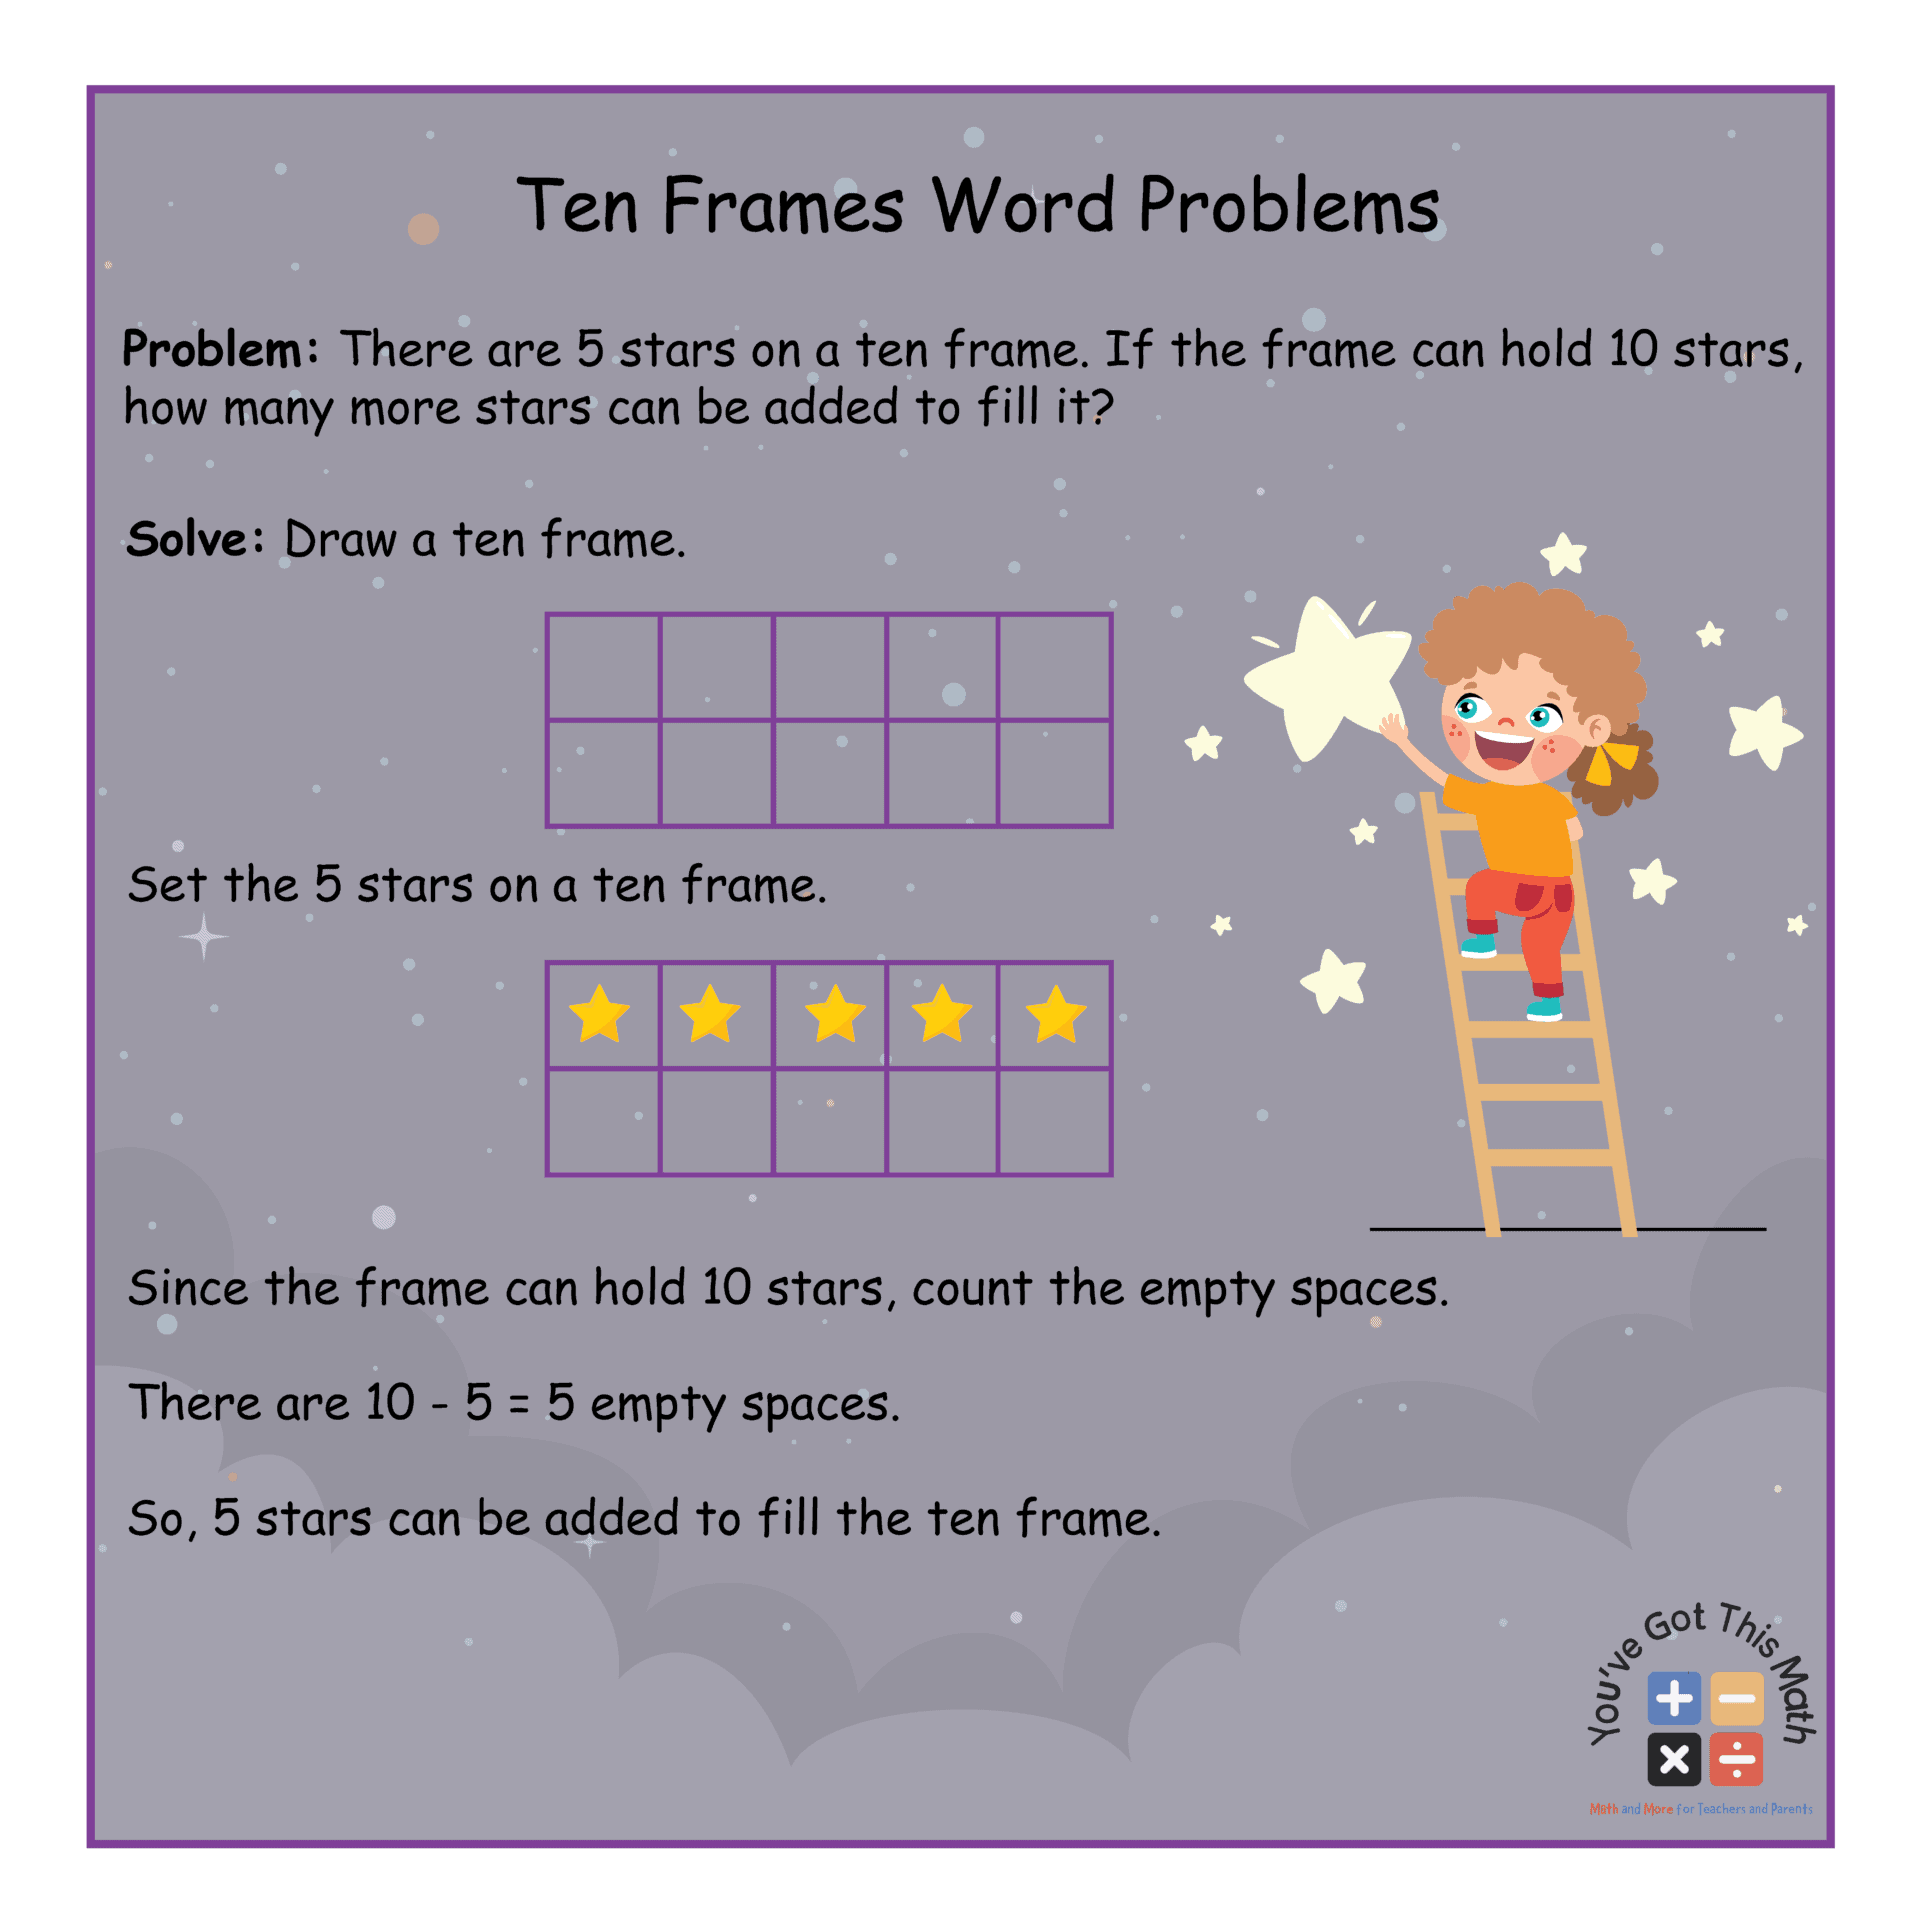 Ten Frames Word Problems